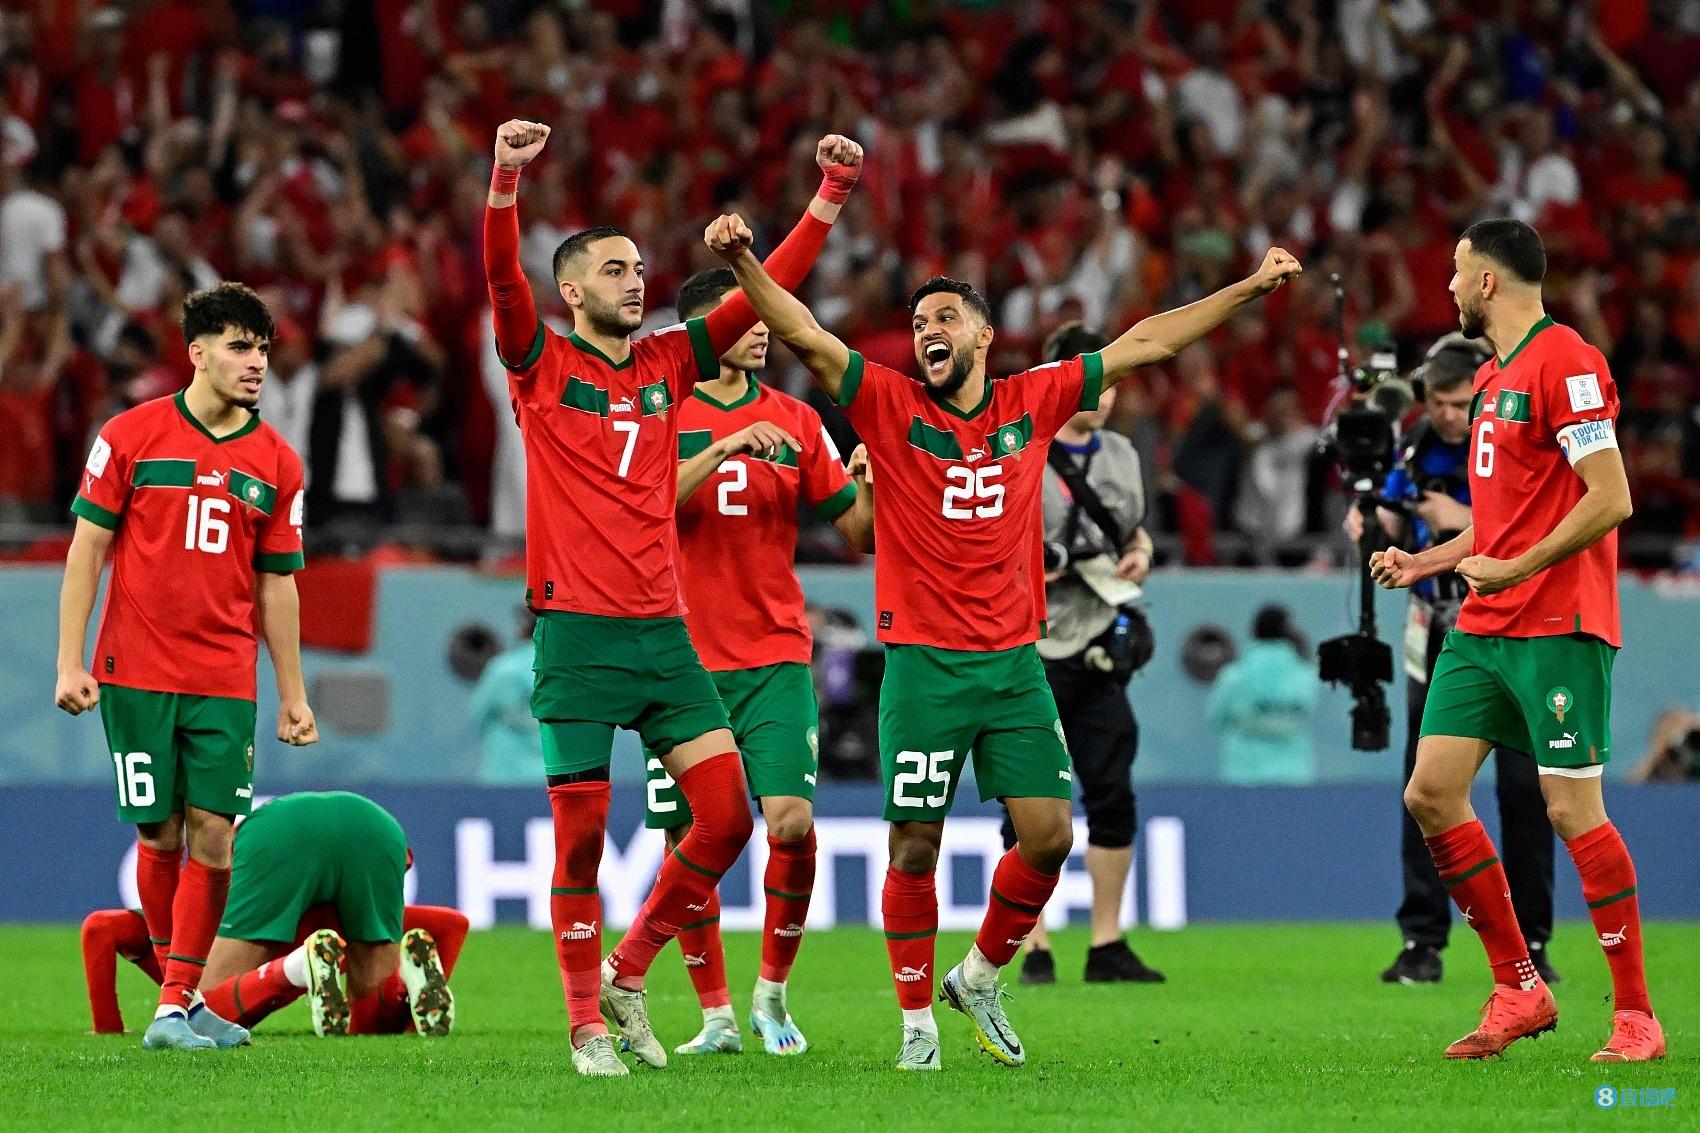 葡萄牙与摩洛哥足球比赛世界杯 摩洛哥 世界杯 摩洛哥世界杯最好成绩 2018世界杯葡萄牙vs摩洛哥比分 创造历史！摩洛哥是世界杯历史首支点球大战获胜的非洲球队